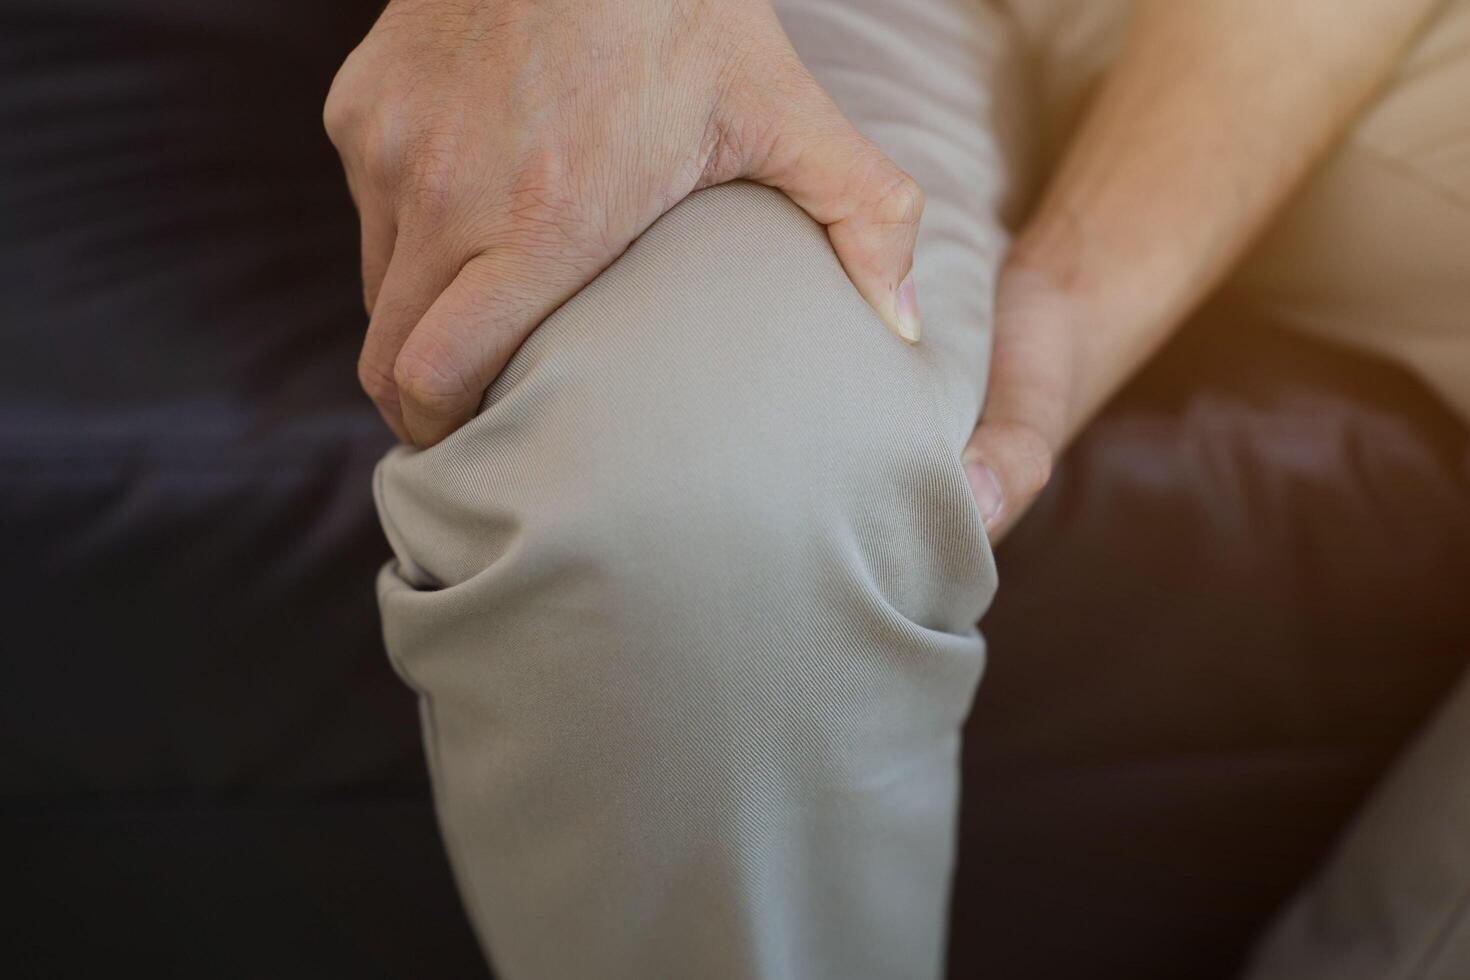 Knie Massage zu lindern Schmerz, Arthrose, Knie Schmerz, Knie Entzündung foto